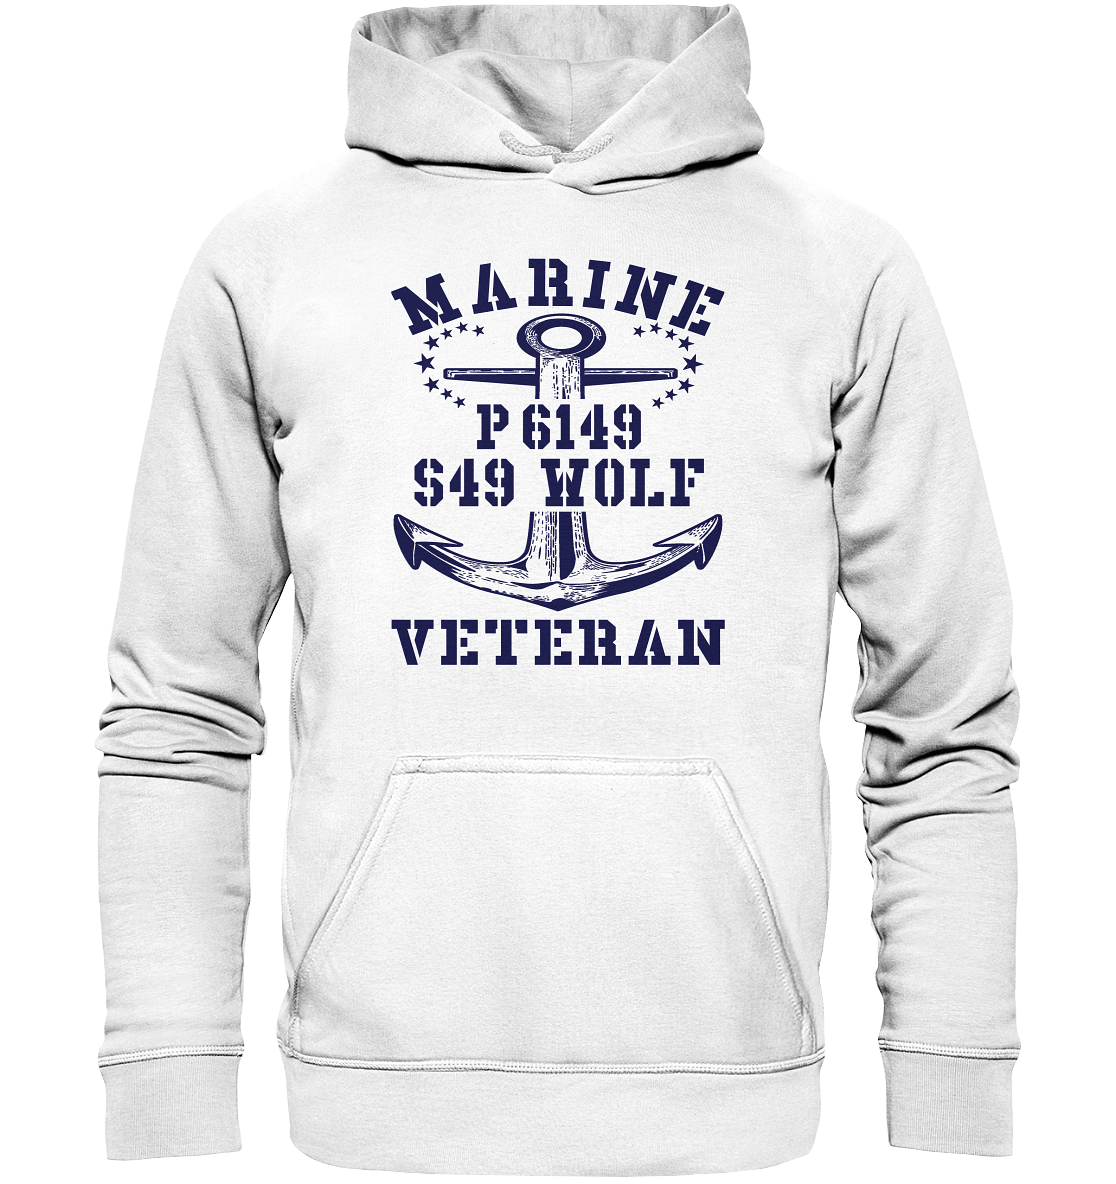 P6149 S49 WOLF Marine Veteran - Basic Unisex Hoodie